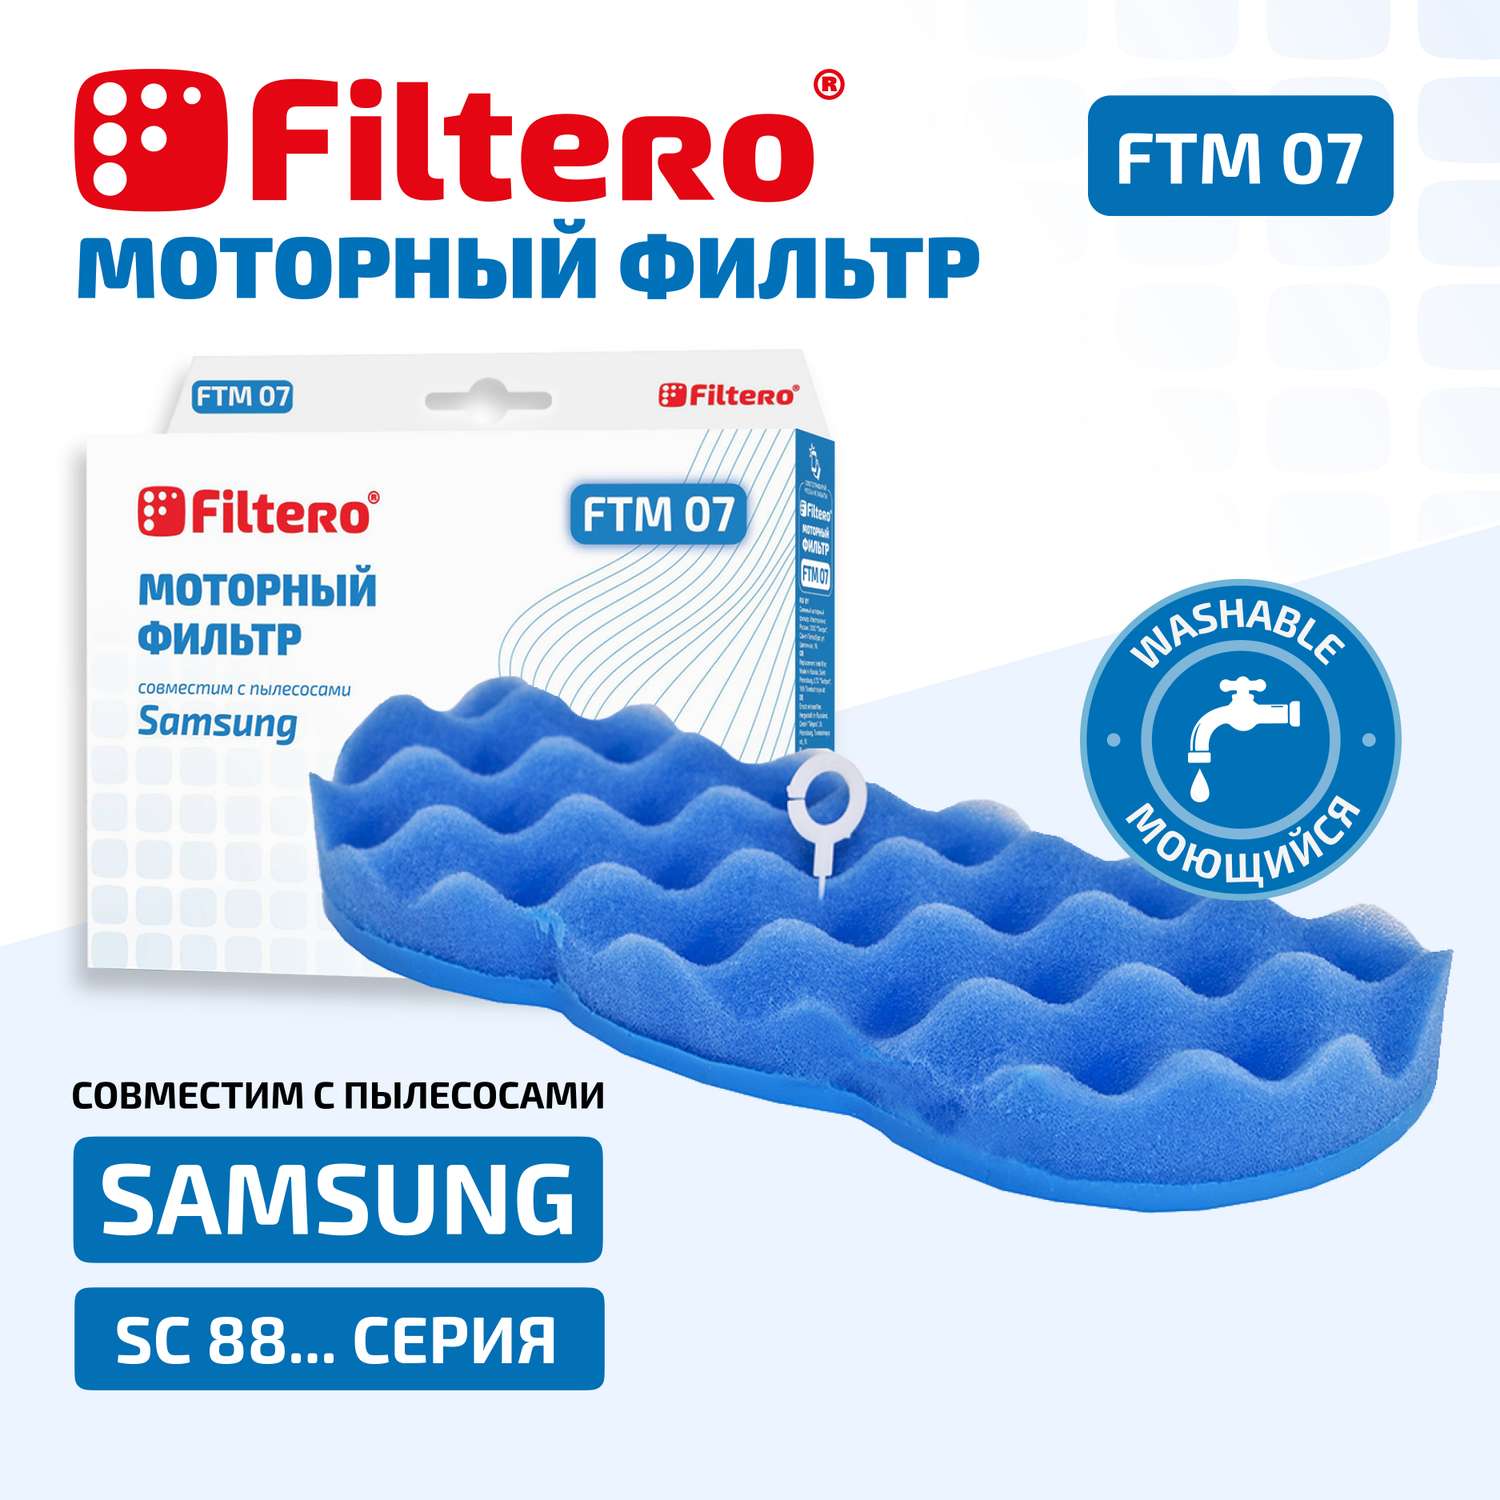 Фильтр моторный Filtero FTM 07 SAM для пылесосов Samsung - фото 2